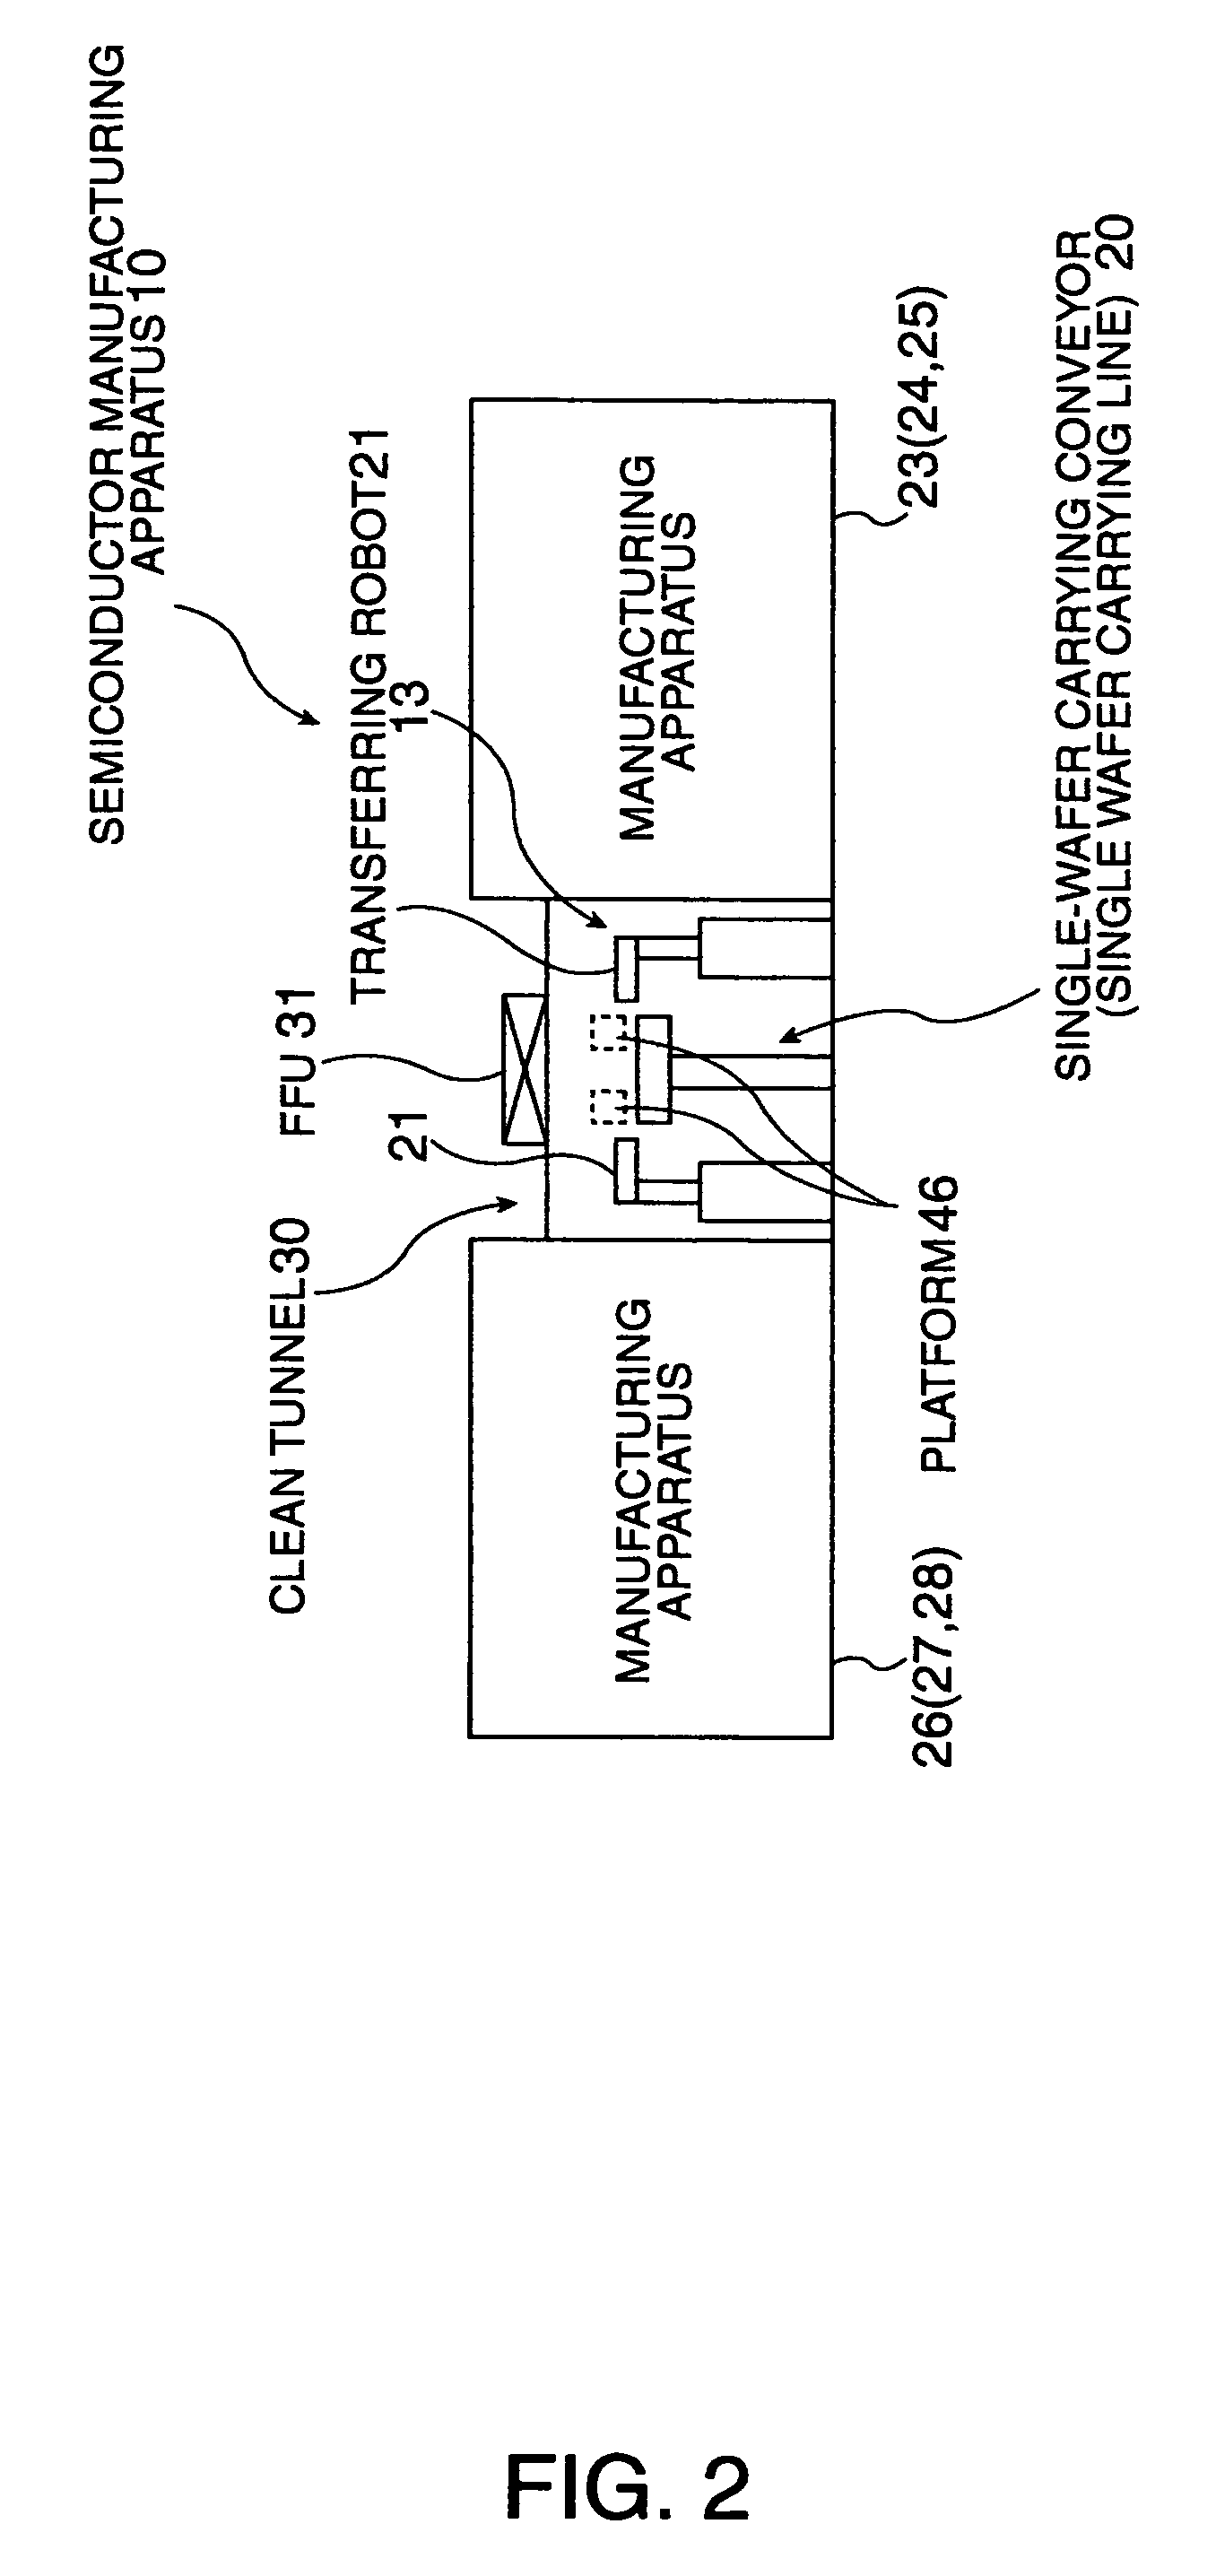 Intermediate product transferring apparatus and carrying system having the intermediate product transferring apparatus